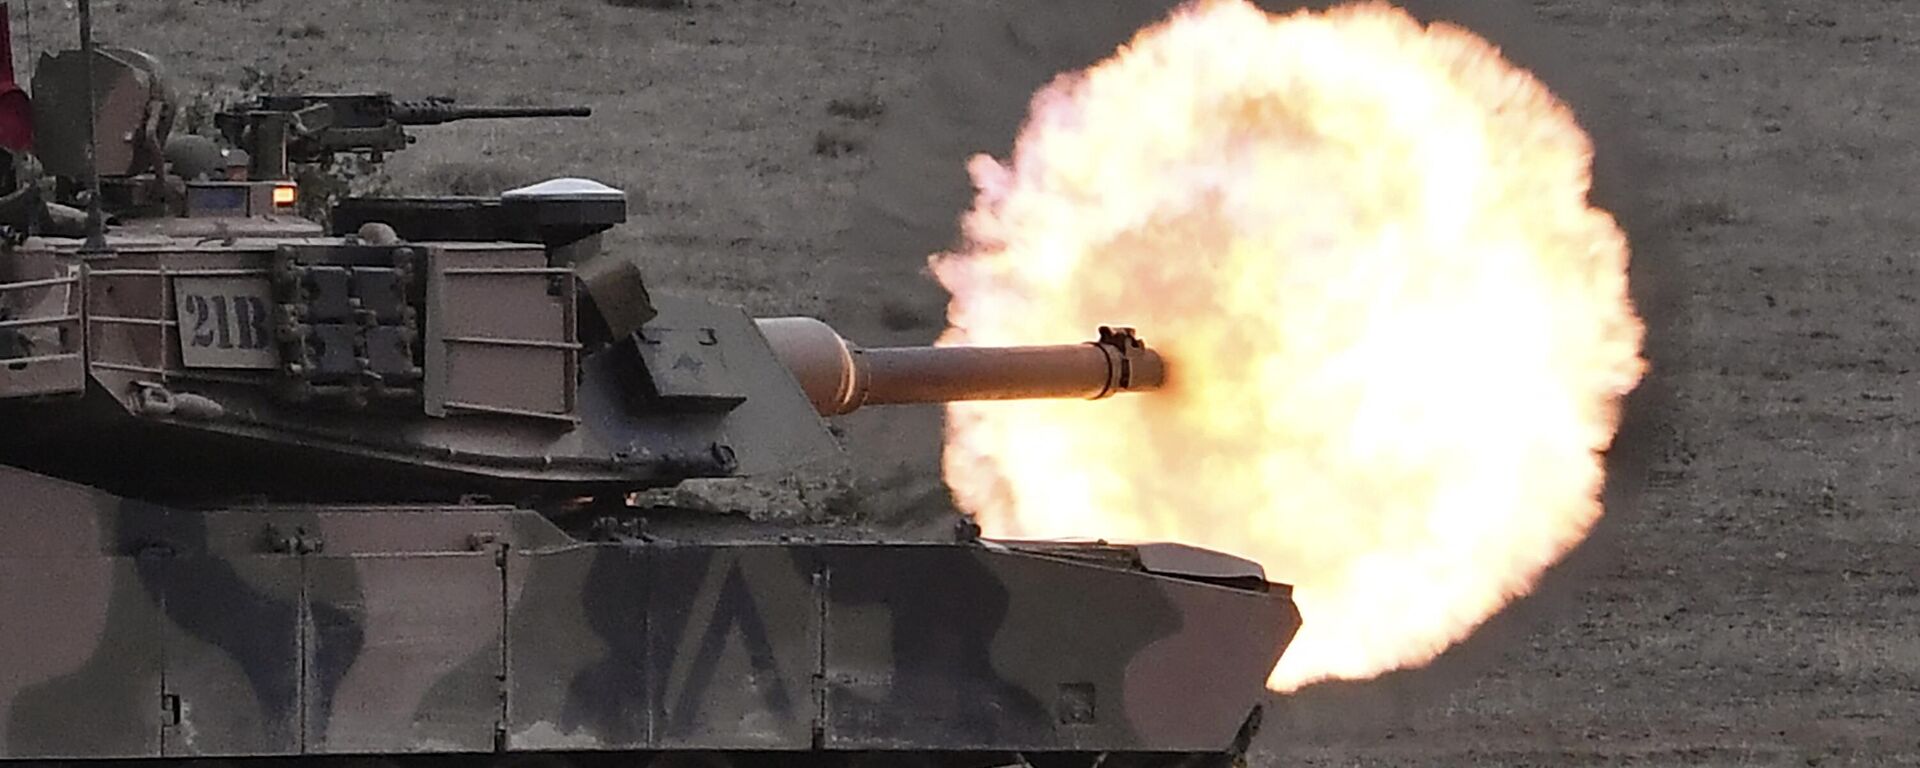 Боевой танк австралийской армии M1A1 Abrams выпускает снаряд во время демонстрации боевых действий, Австралия - Sputnik Молдова, 1920, 26.01.2023